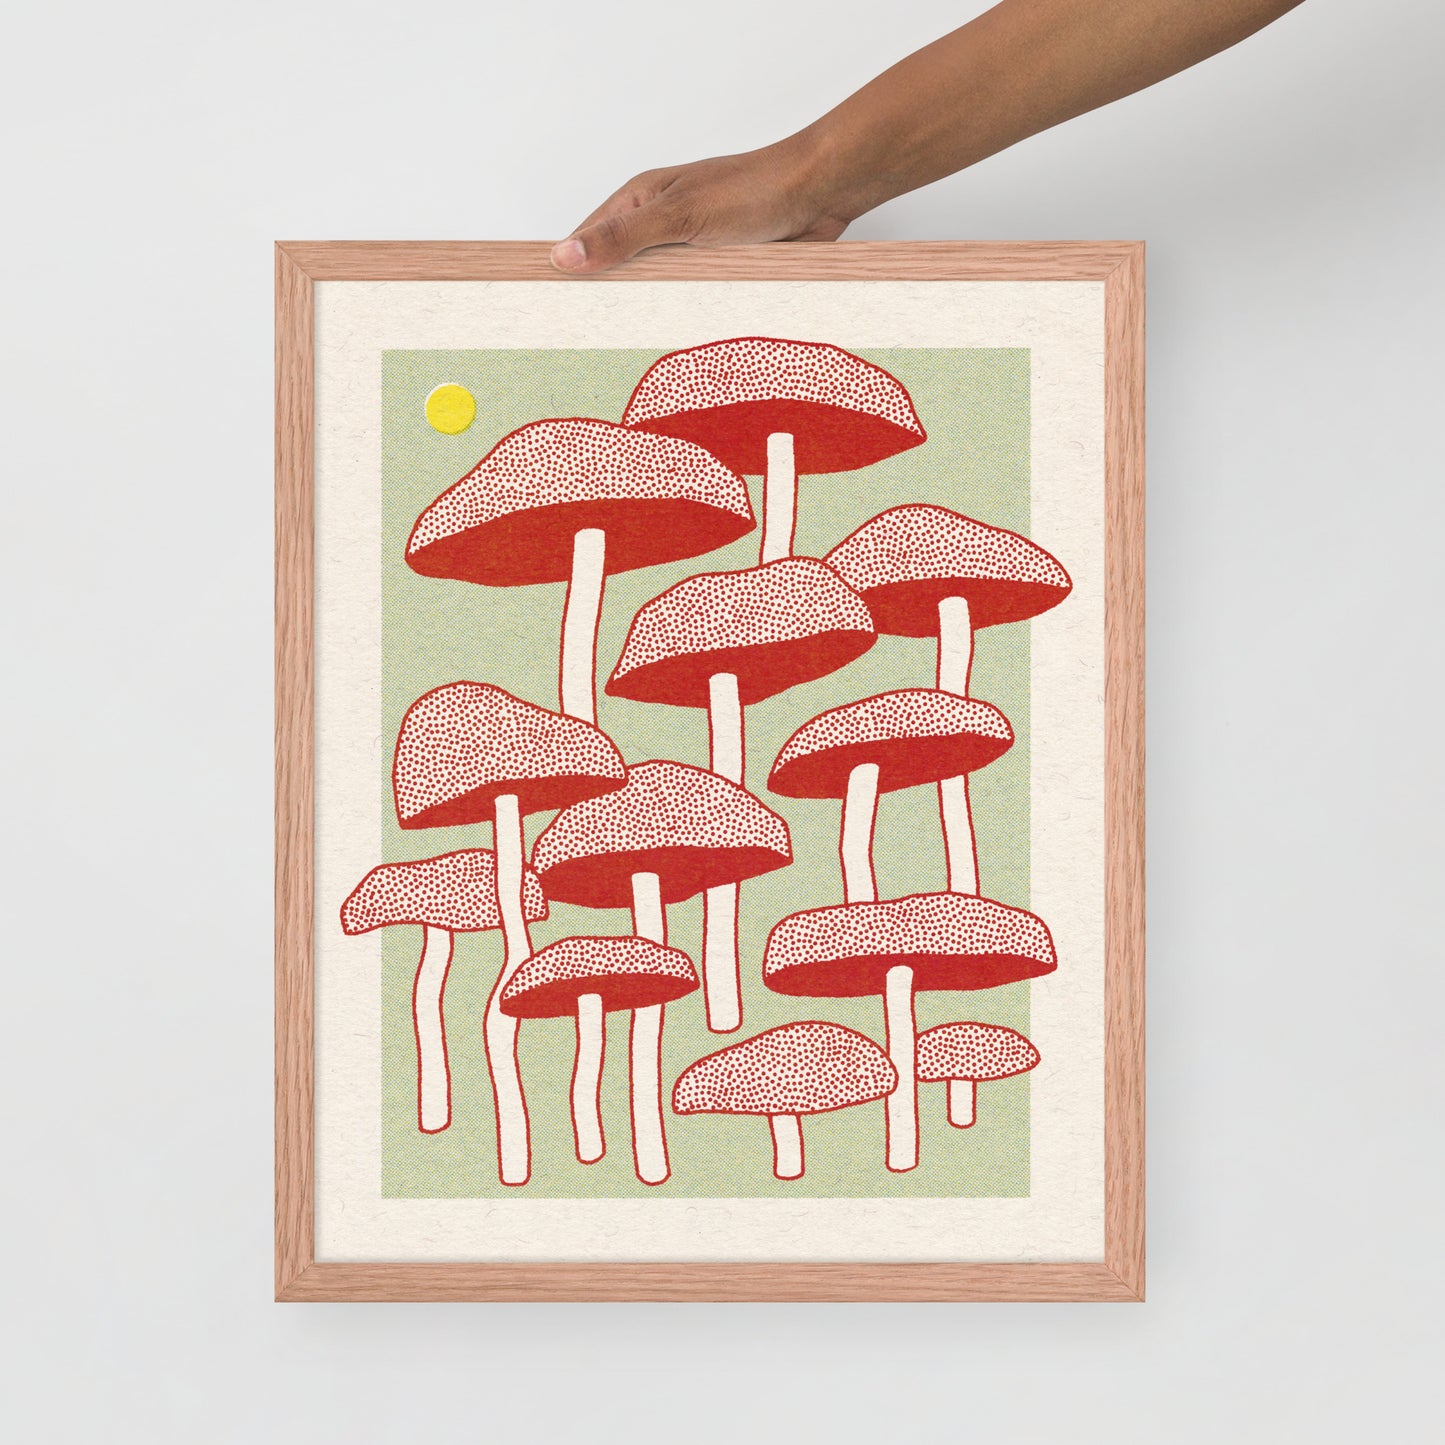 Mushroom Framed Print